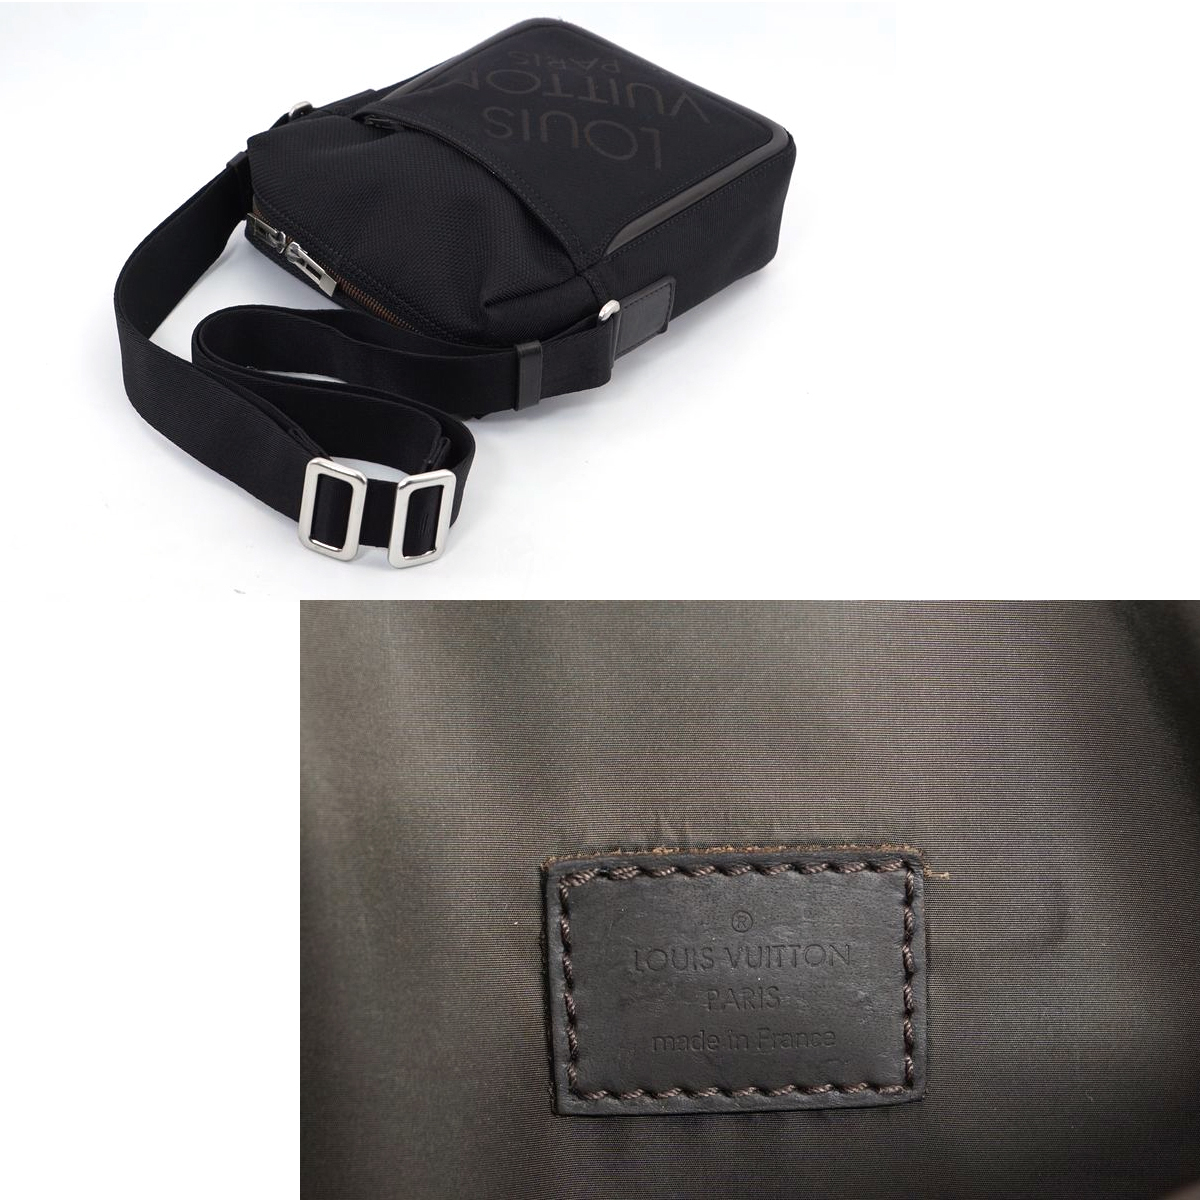 【美品】Louis Vuitton ダミエジェアン シタダン ショルダーバッグ 鞄 ノワール 黒 ブラック DAMIERGEANT メンズ レディース M93042